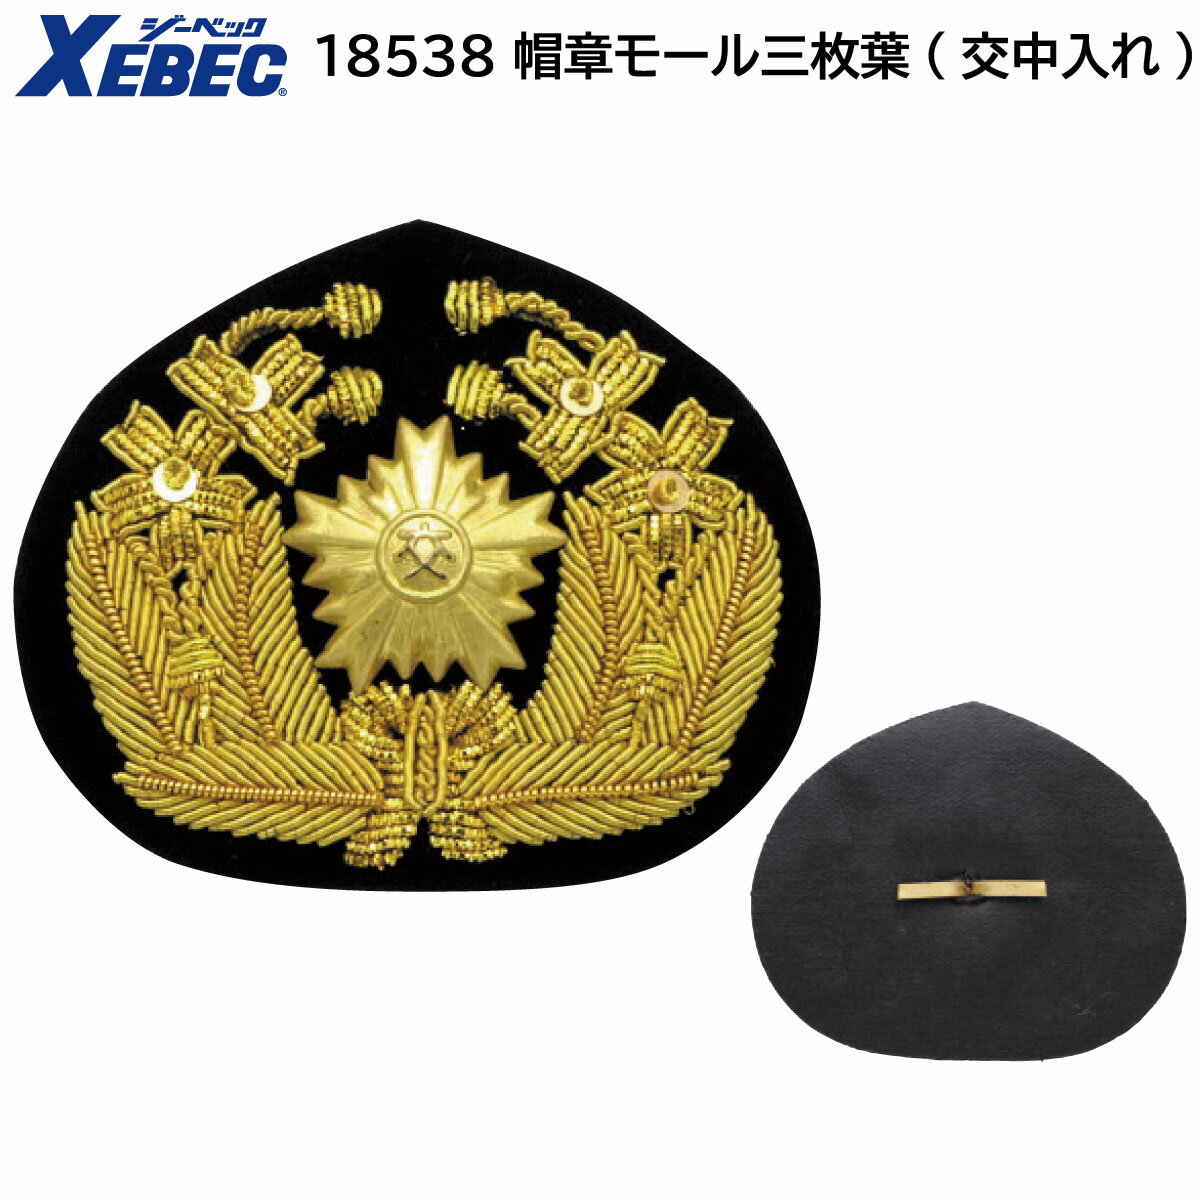 帽章モール三枚葉(交中入れ) 18538 ブラック 74mm×60mm ジーベック XEBEC